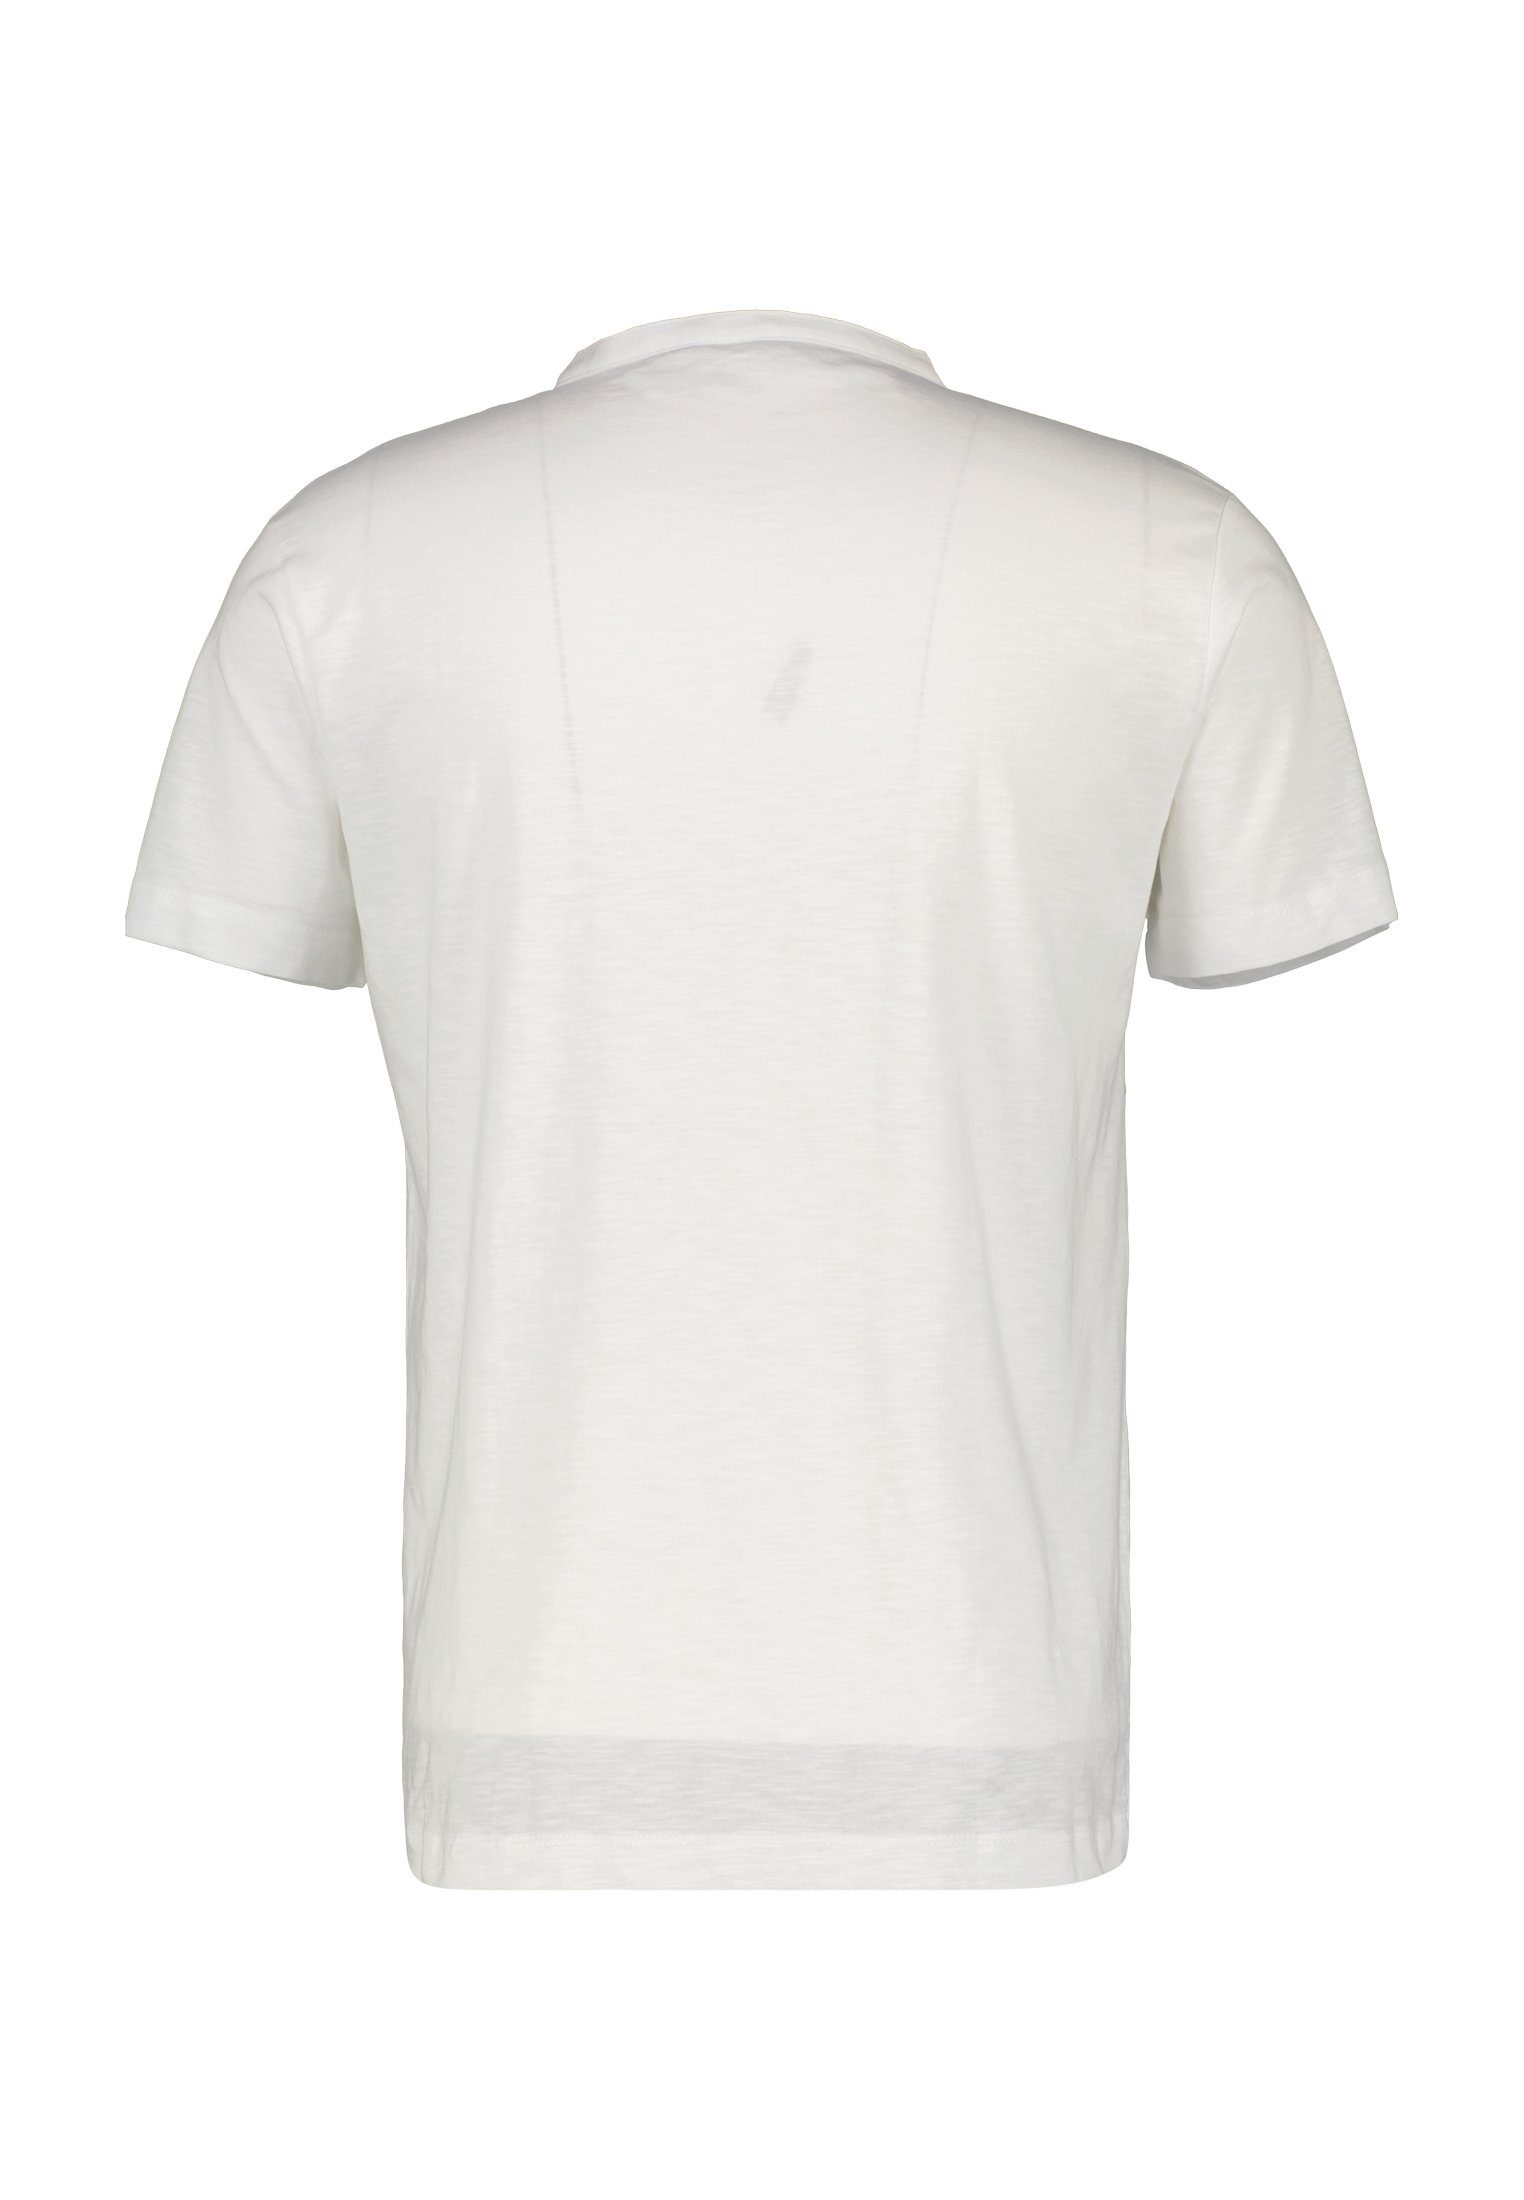 Strukturqualitäit WHITE LERROS in LERROS Kurzarmshirt Serafino-Shirt